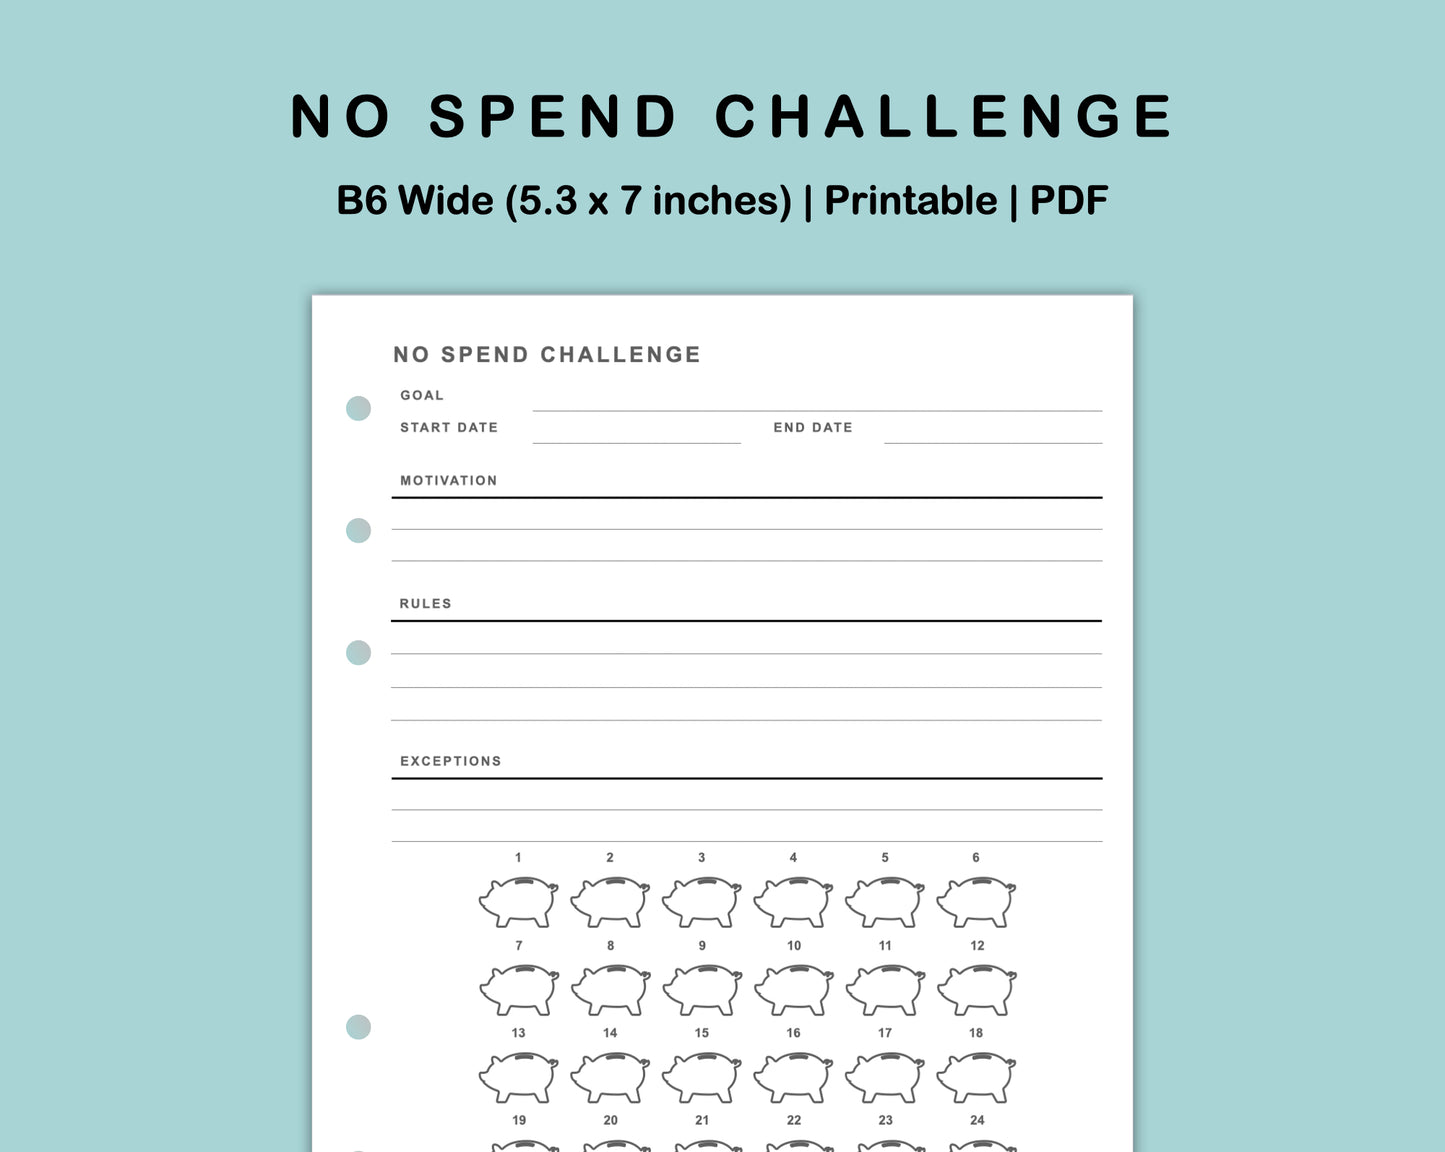 B6 Wide Inserts - No Spend Challenge